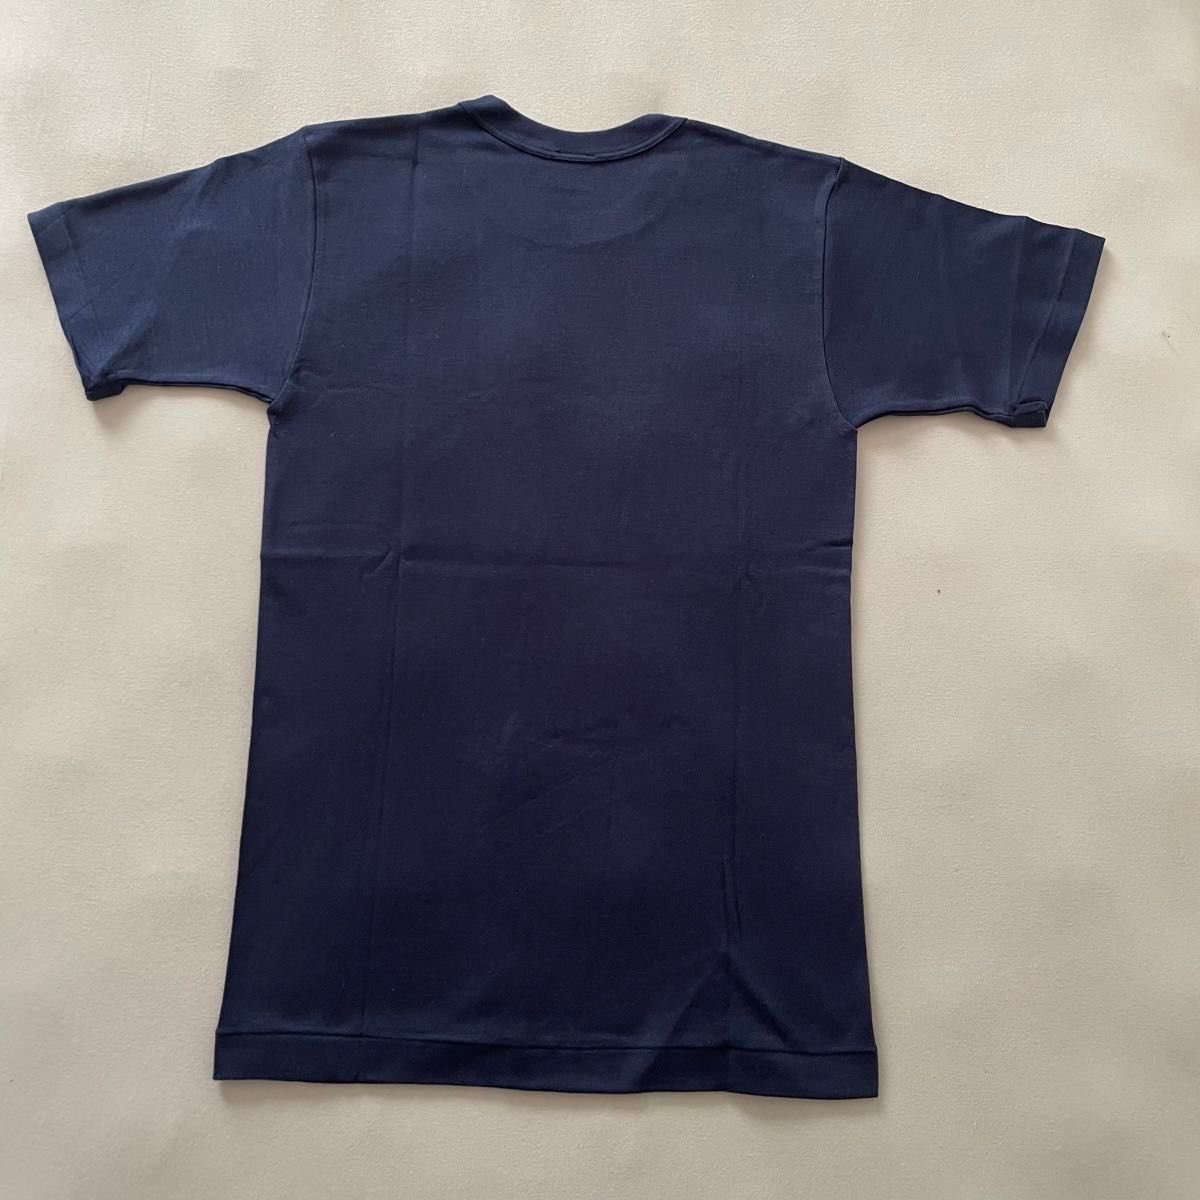 【ユニセックス】半袖 Tシャツ 綿シャツ インナー アンダーシャツ 日本製 無地 綿100%